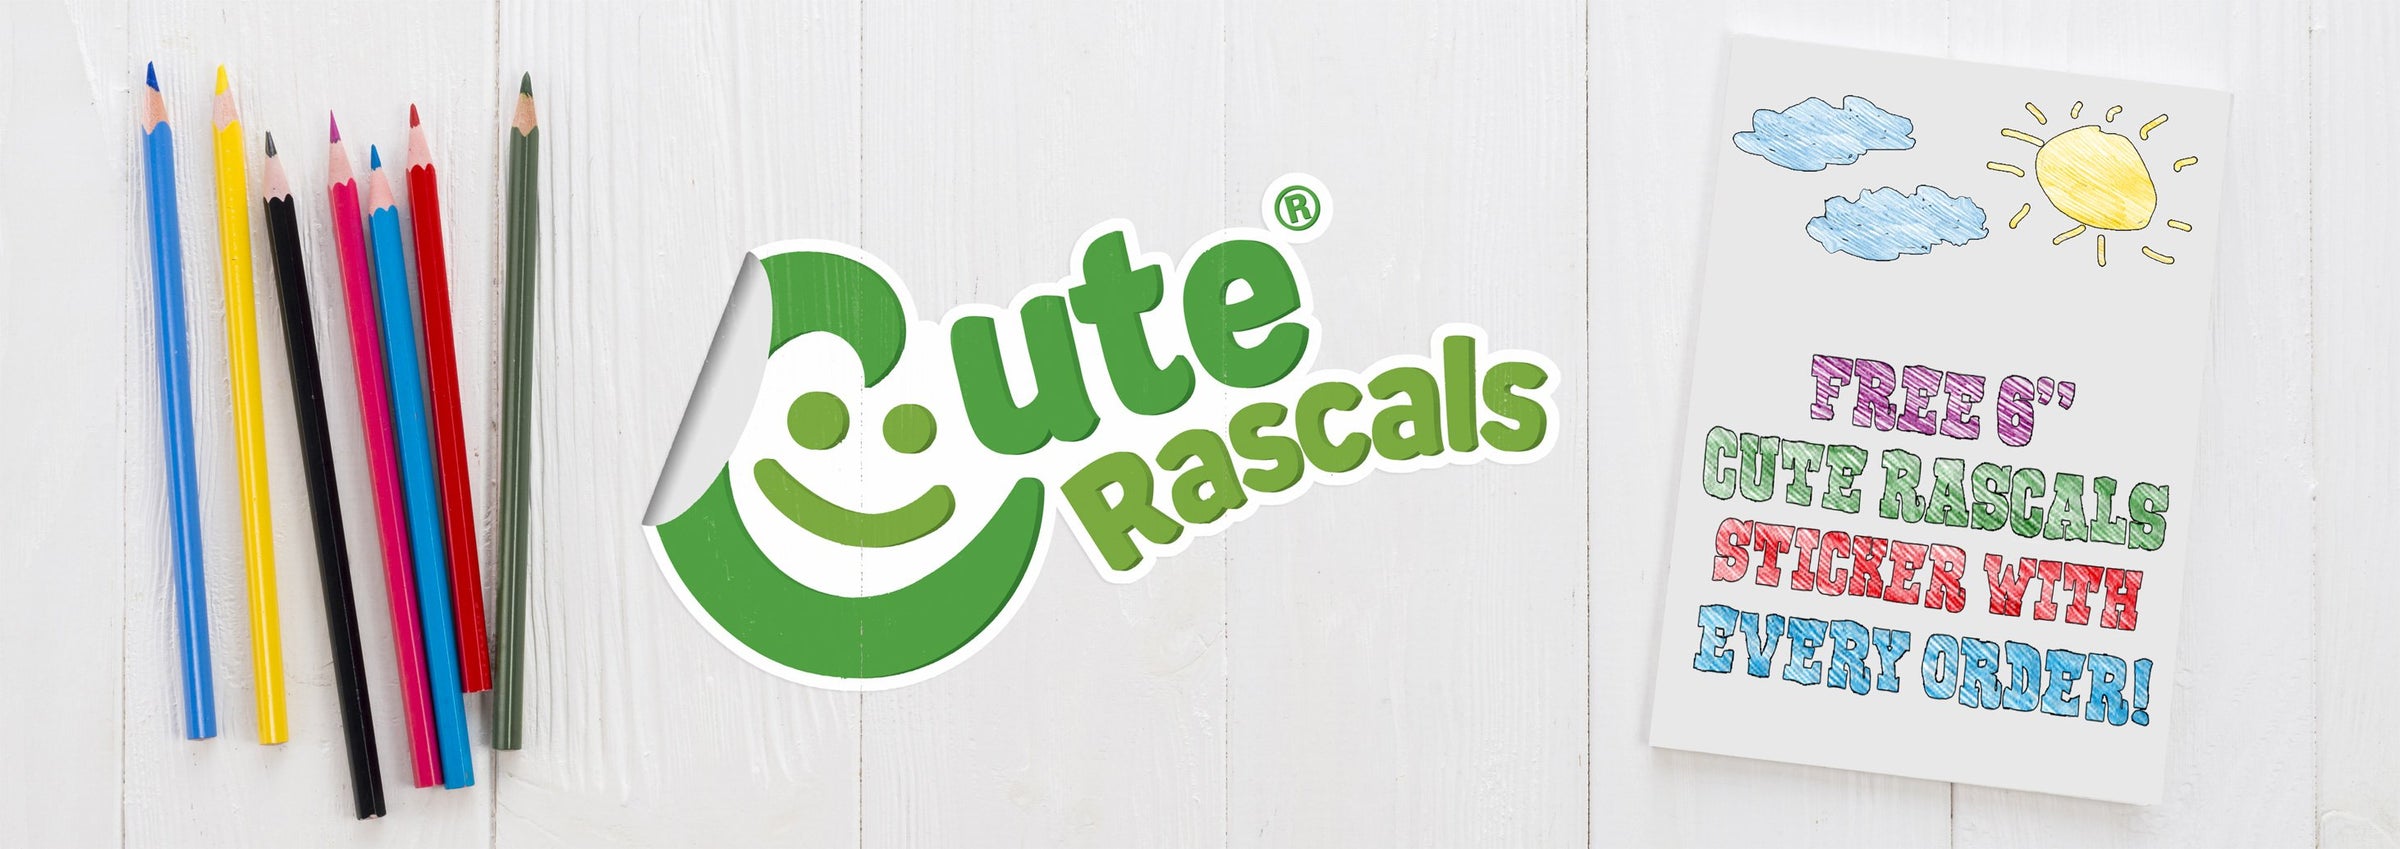 Cute rascals sticker 6ef308b5 a34c 4674 b9d6 f011e7a03d85 min